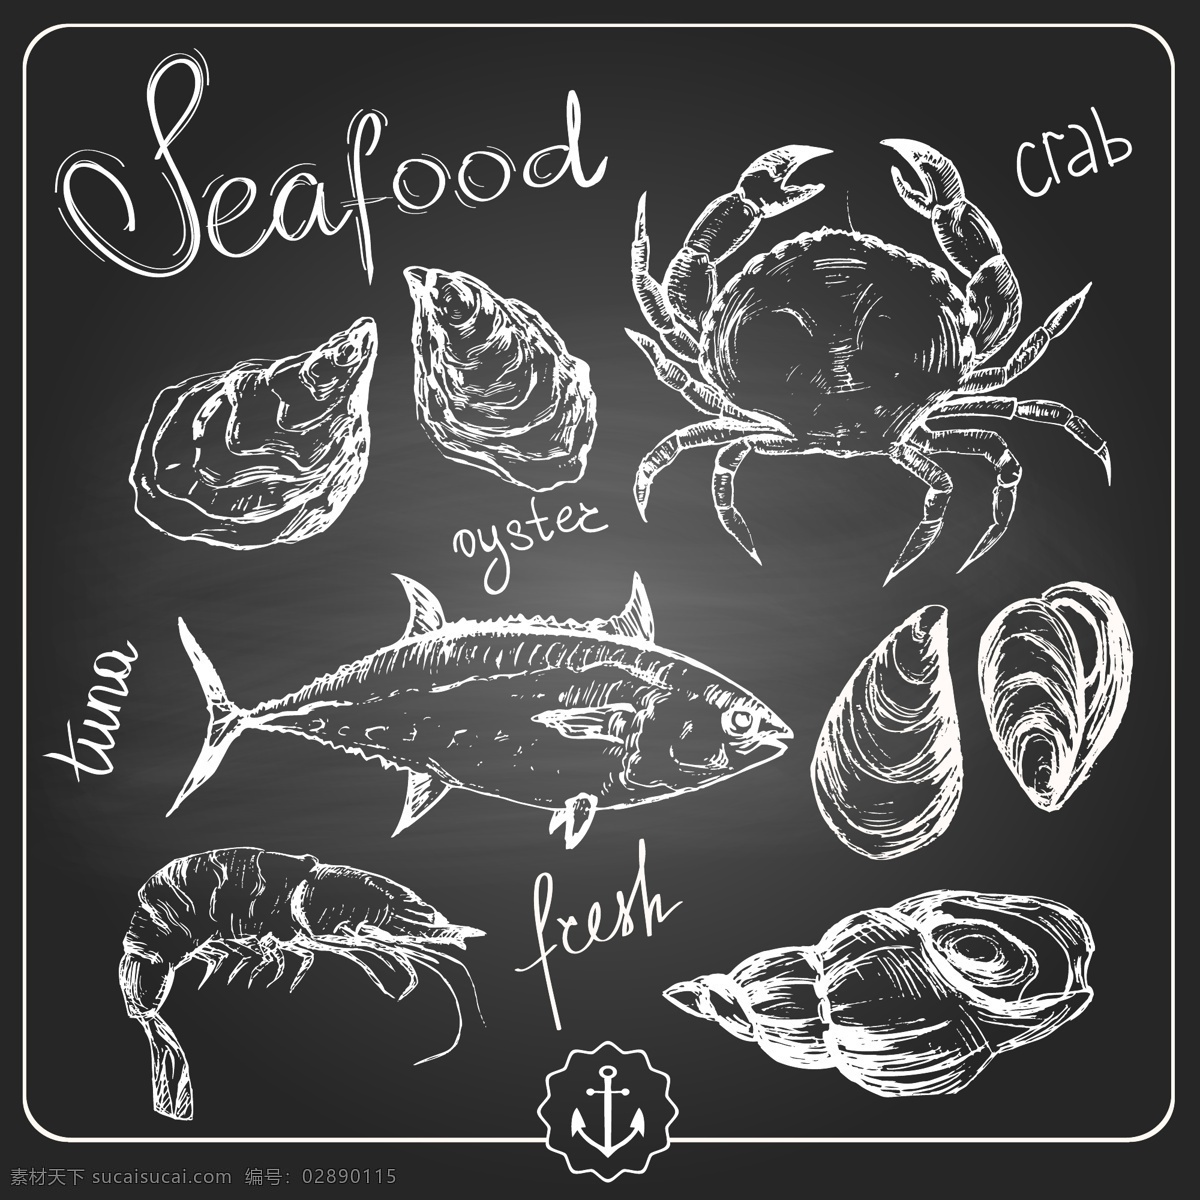 黑白 手绘 海鲜 元素 插画 大虾 鱼类 螃蟹 海螺